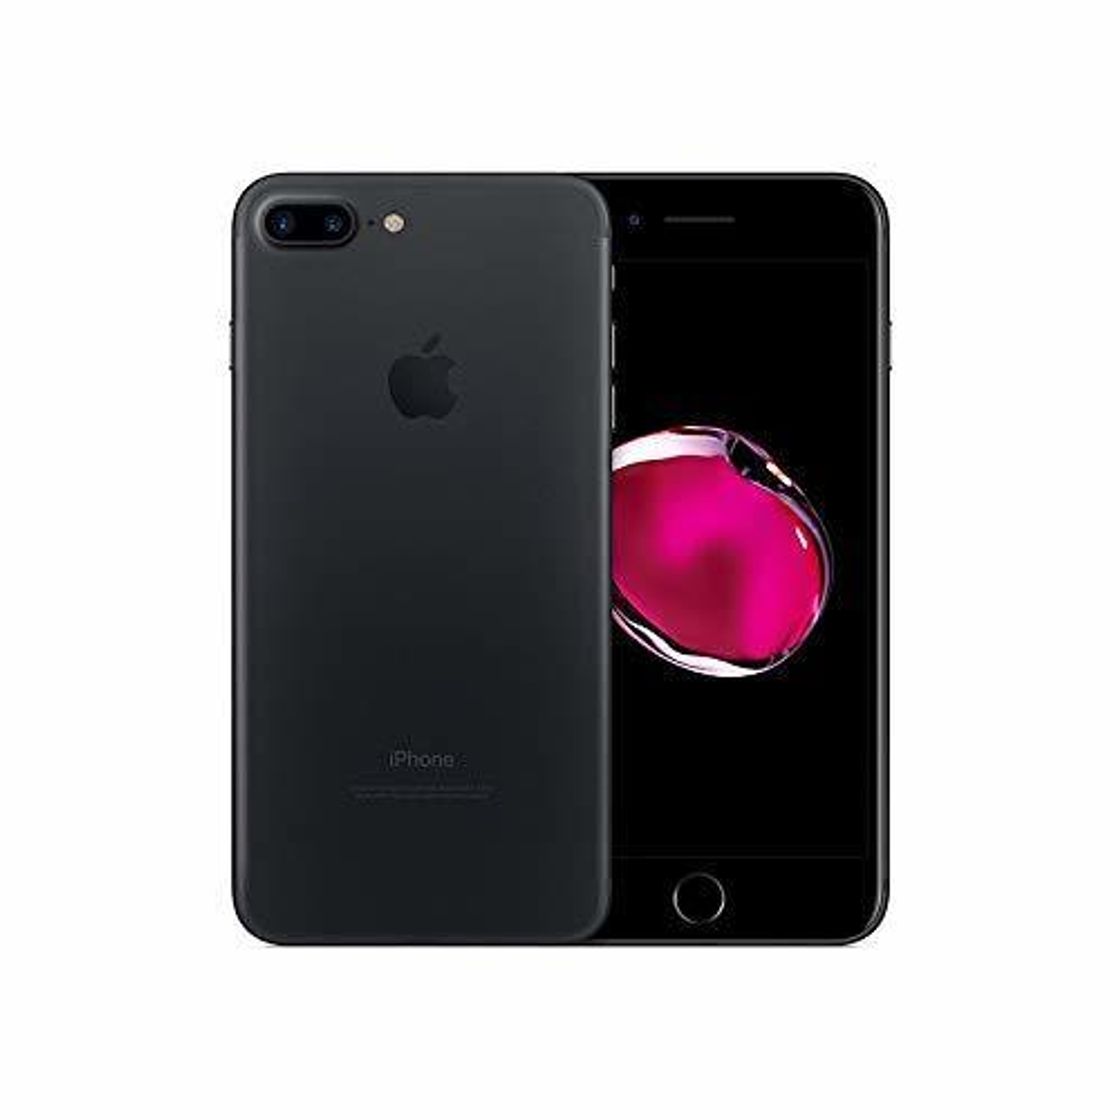 Apple iPhone 7 Plus 128GB Negro